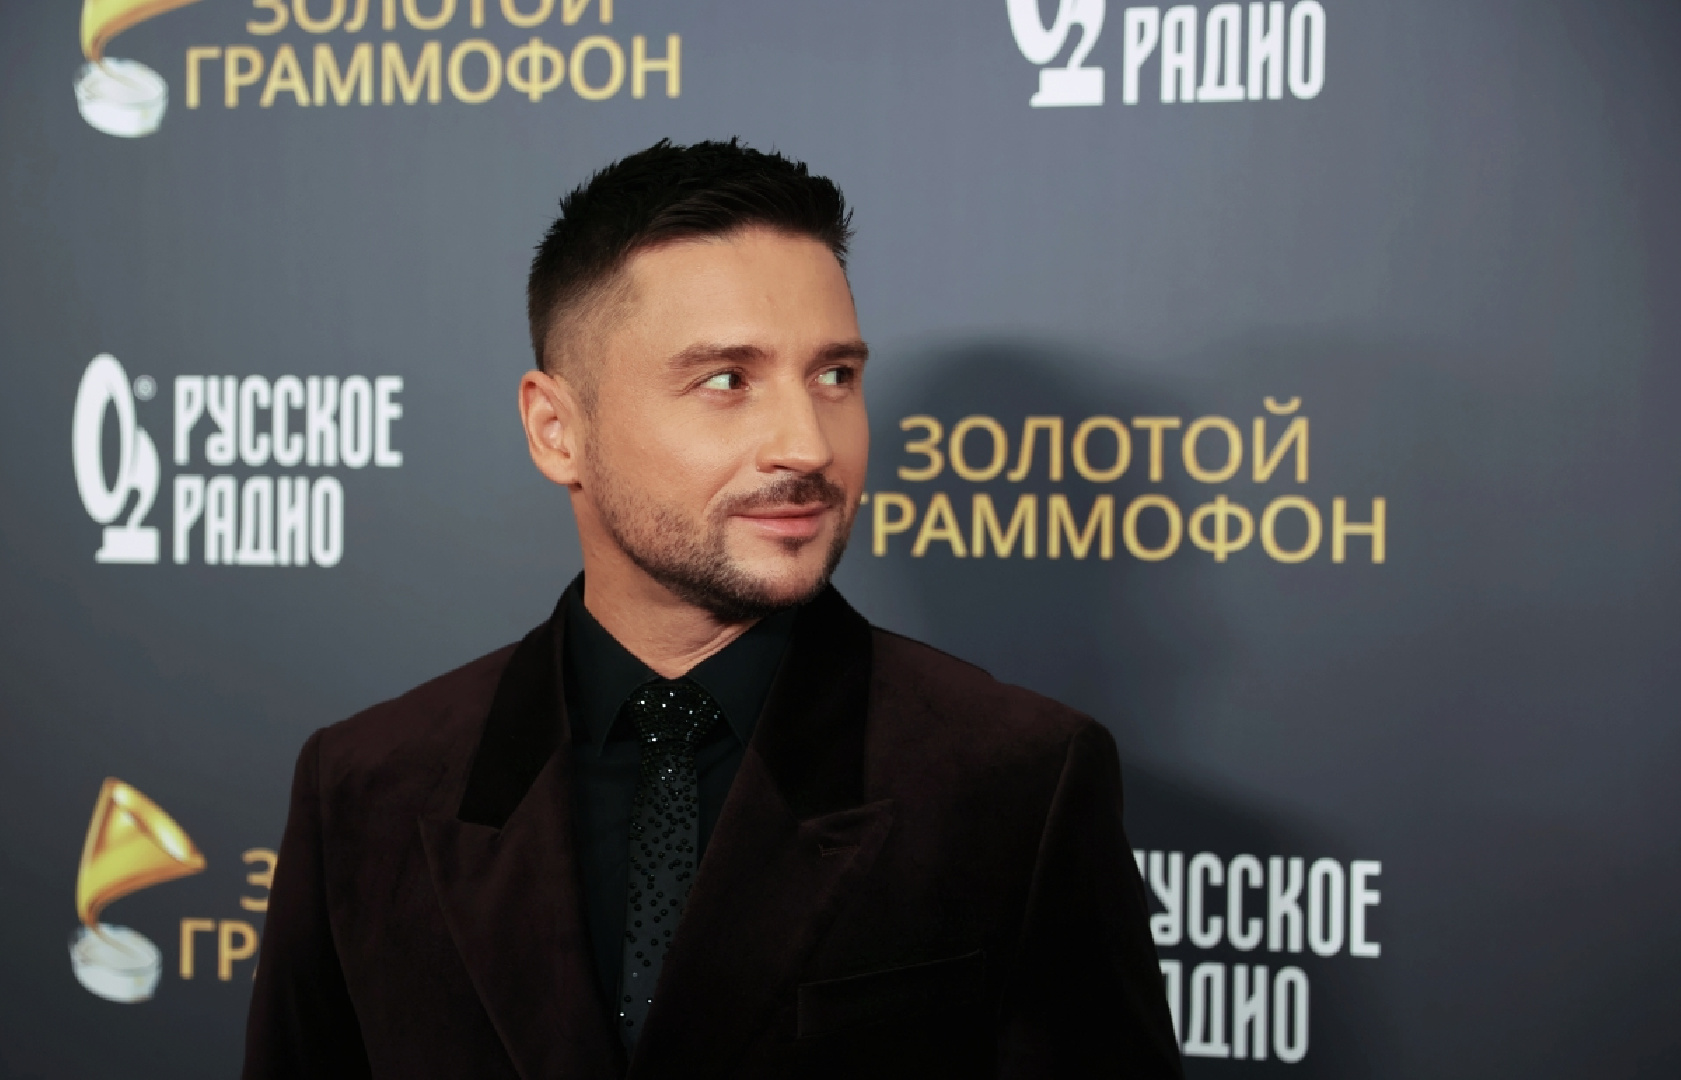 Лазарев удалил клип на песню «Так красиво» после обвинений в пропаганде ЛГБТ* | Радио 1